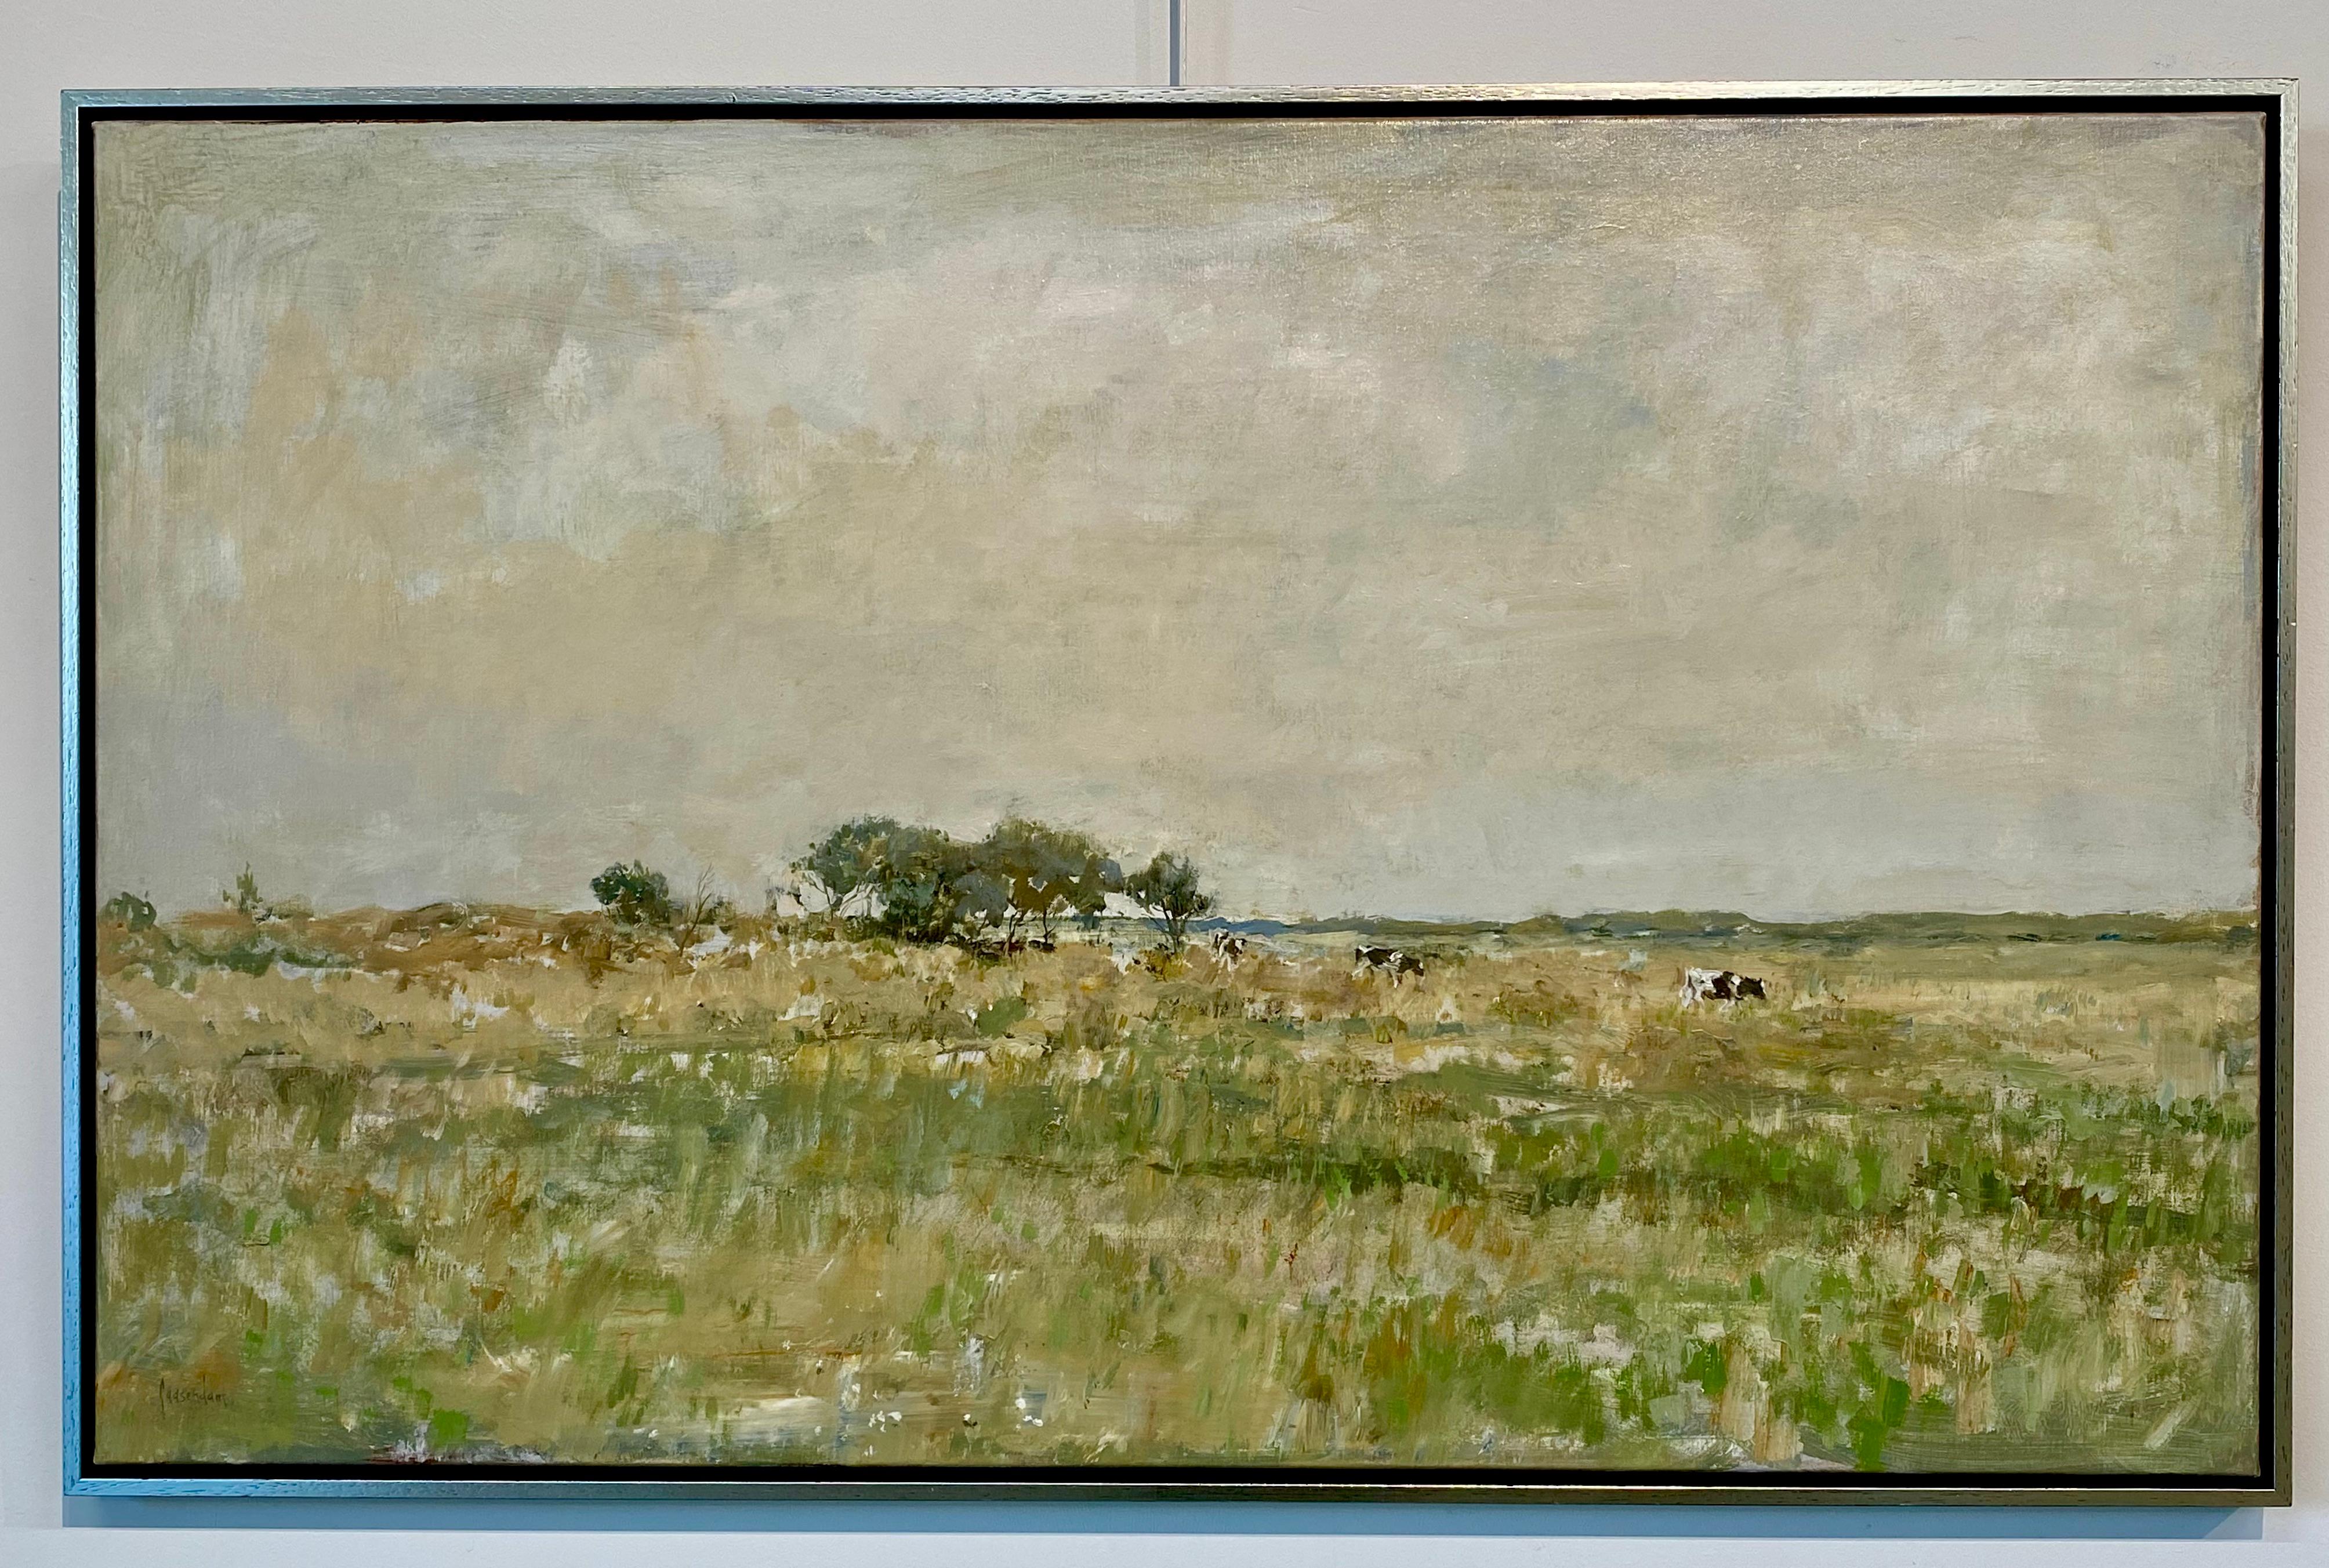 Peinture de paysage néerlandaise contemporaine du 21e siècle - Vaches sur le terreau de sel - Painting de Flip Gaasendam